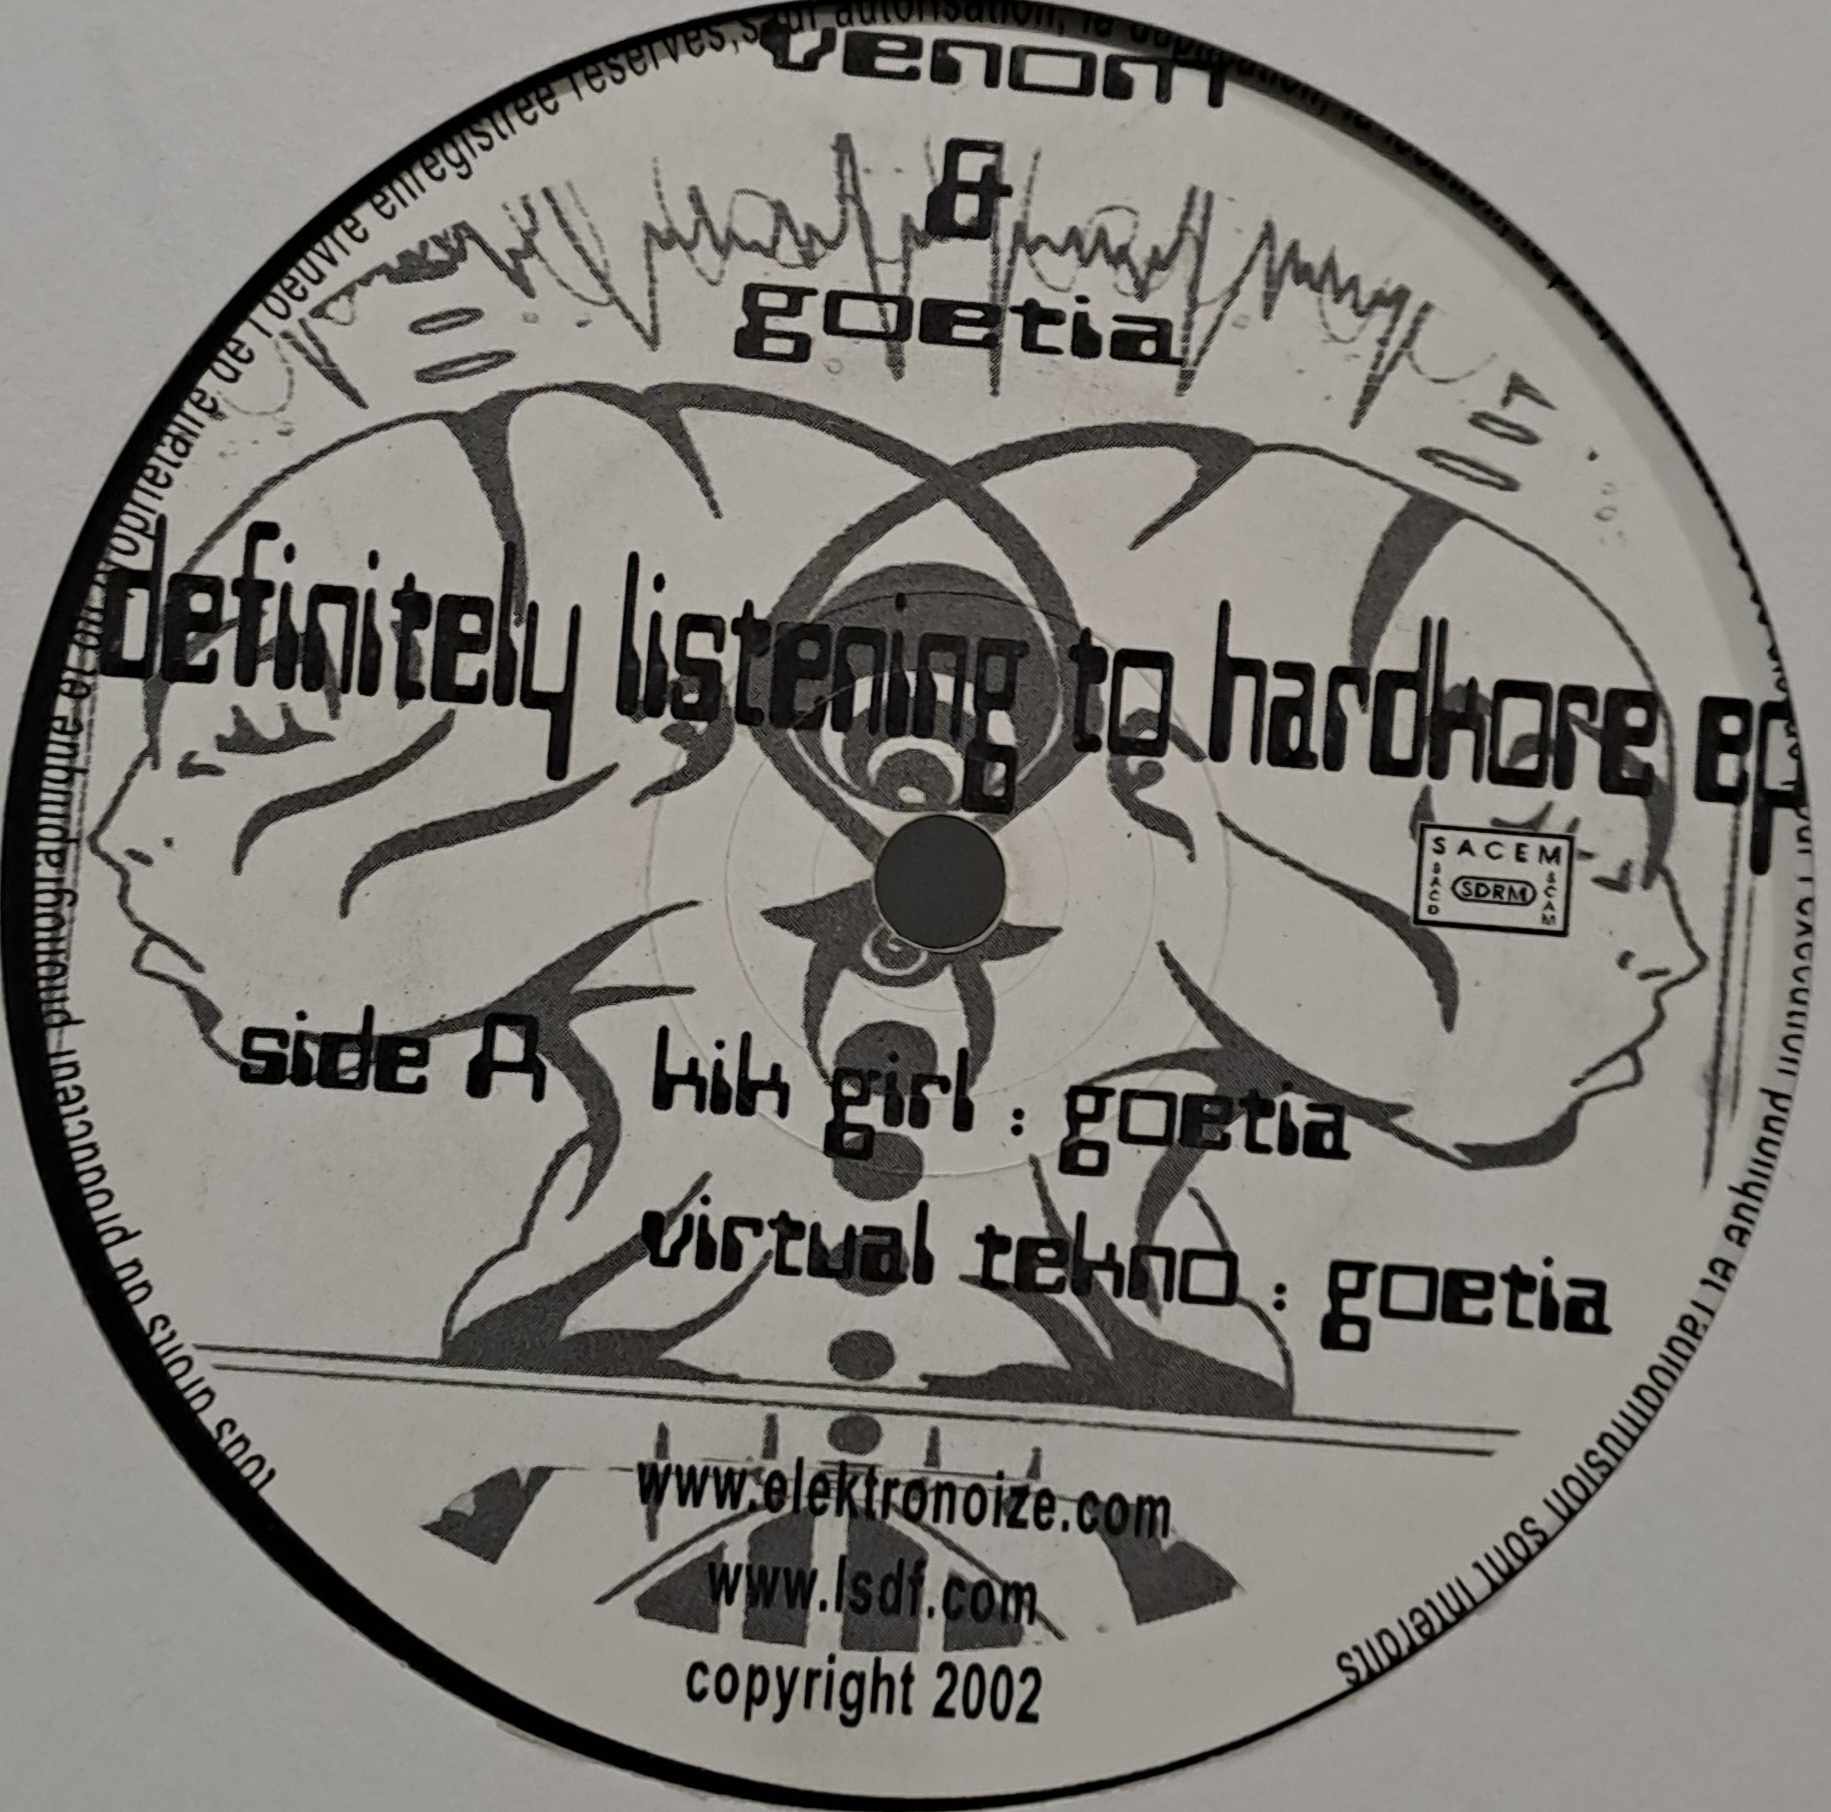 RoffKore Records 01 - vinyle hardcore